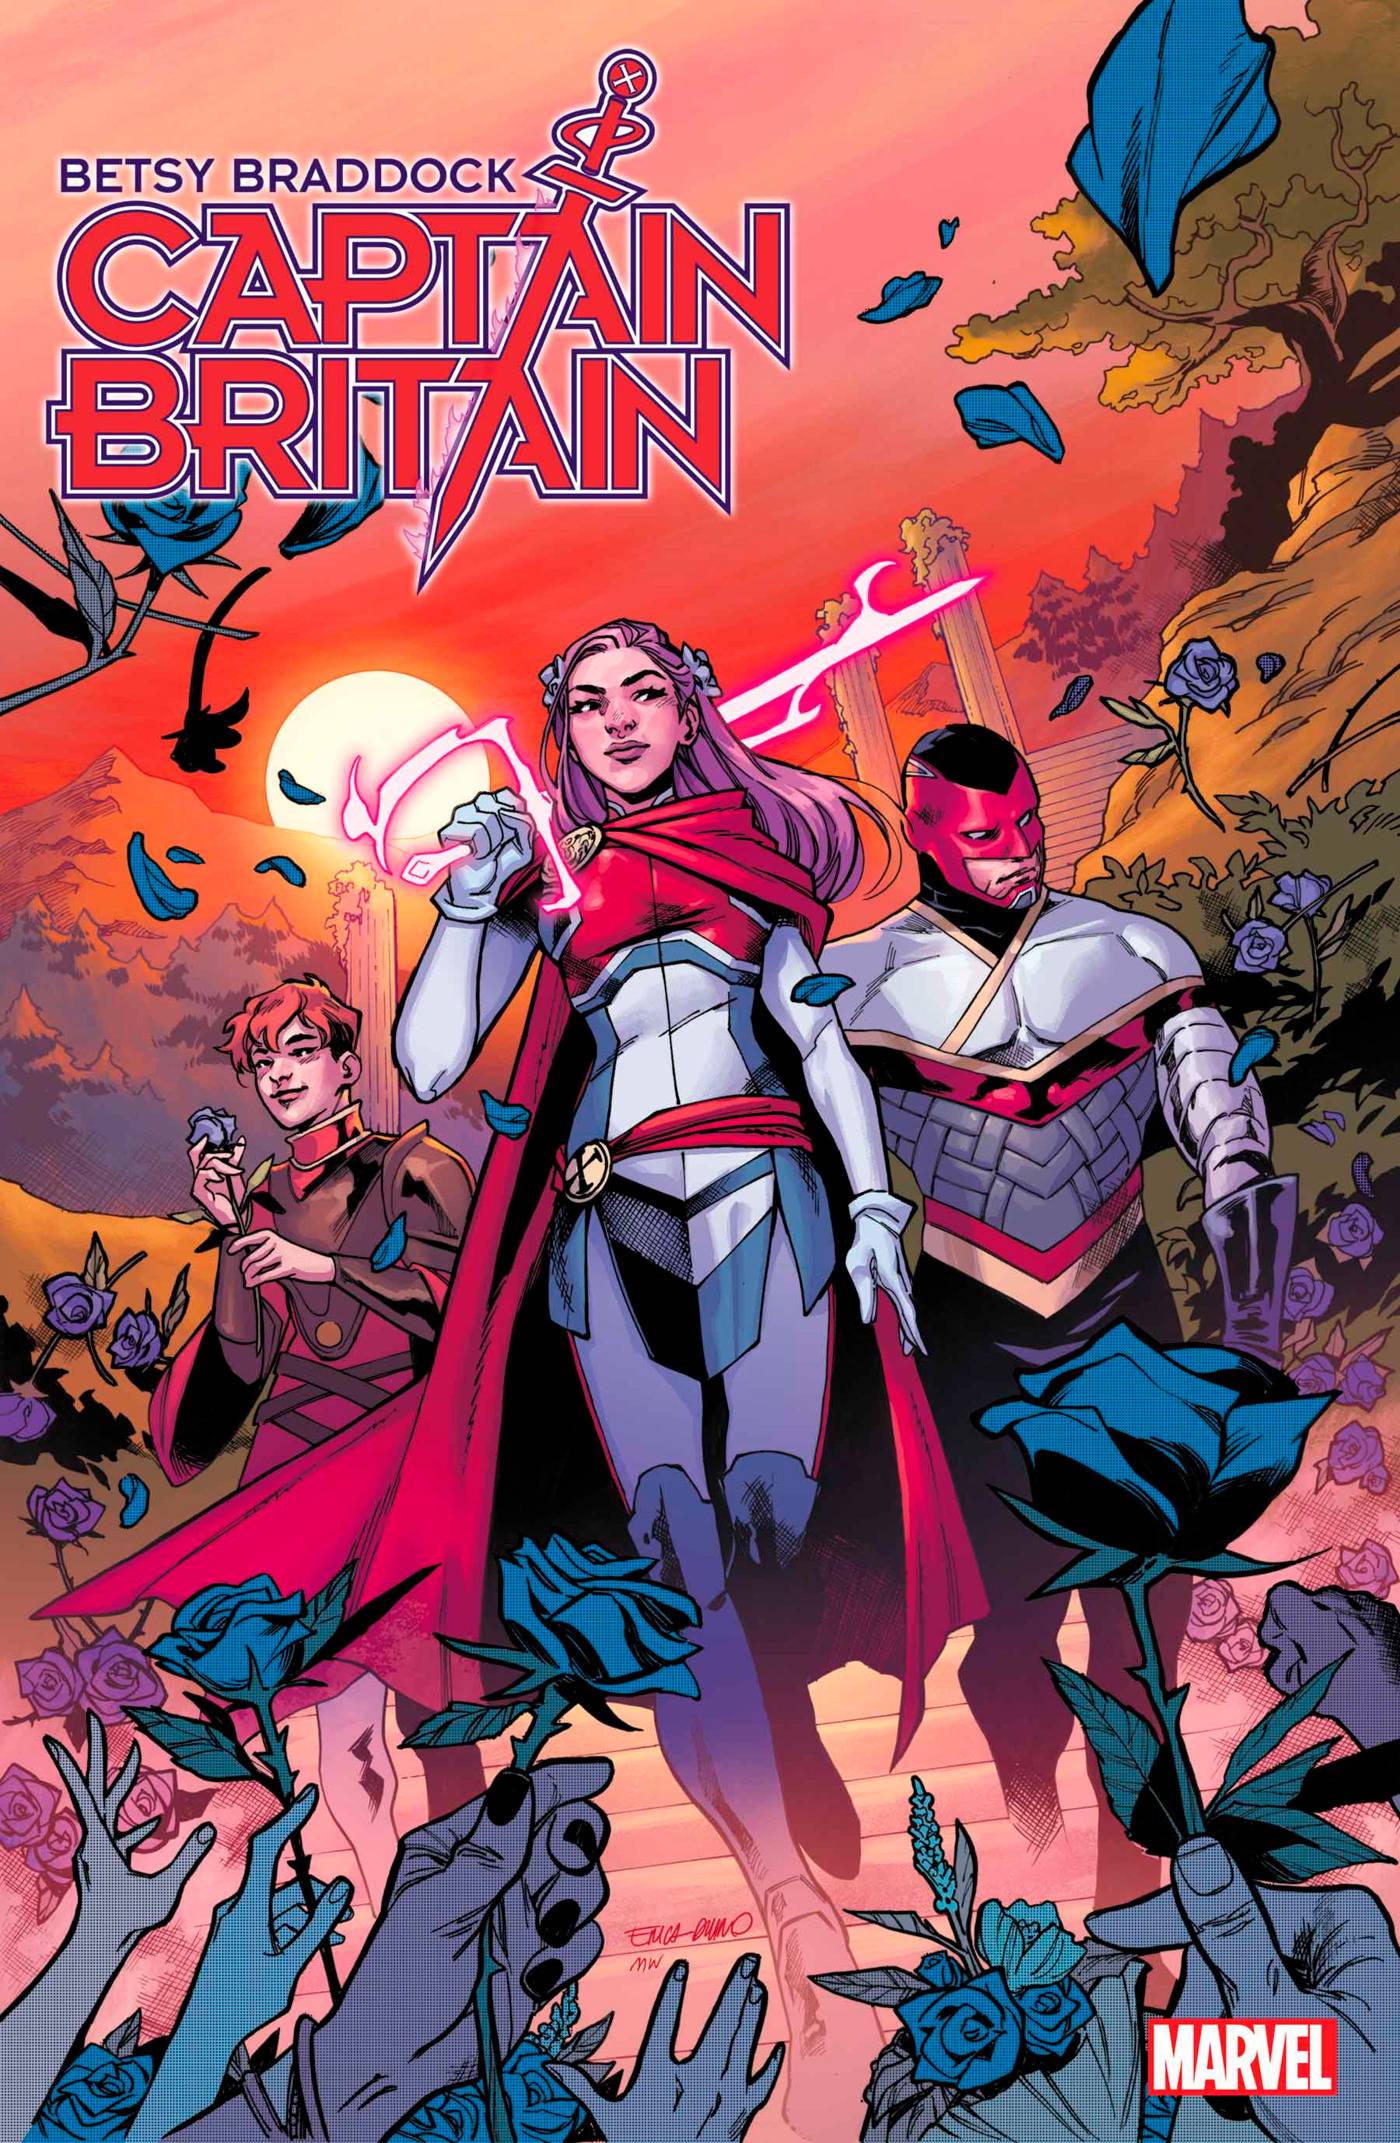 BETSY BRADDOCK CAPTAIN BRITAIN #1 MARVEL COMICS (NOV22) (Avengers)